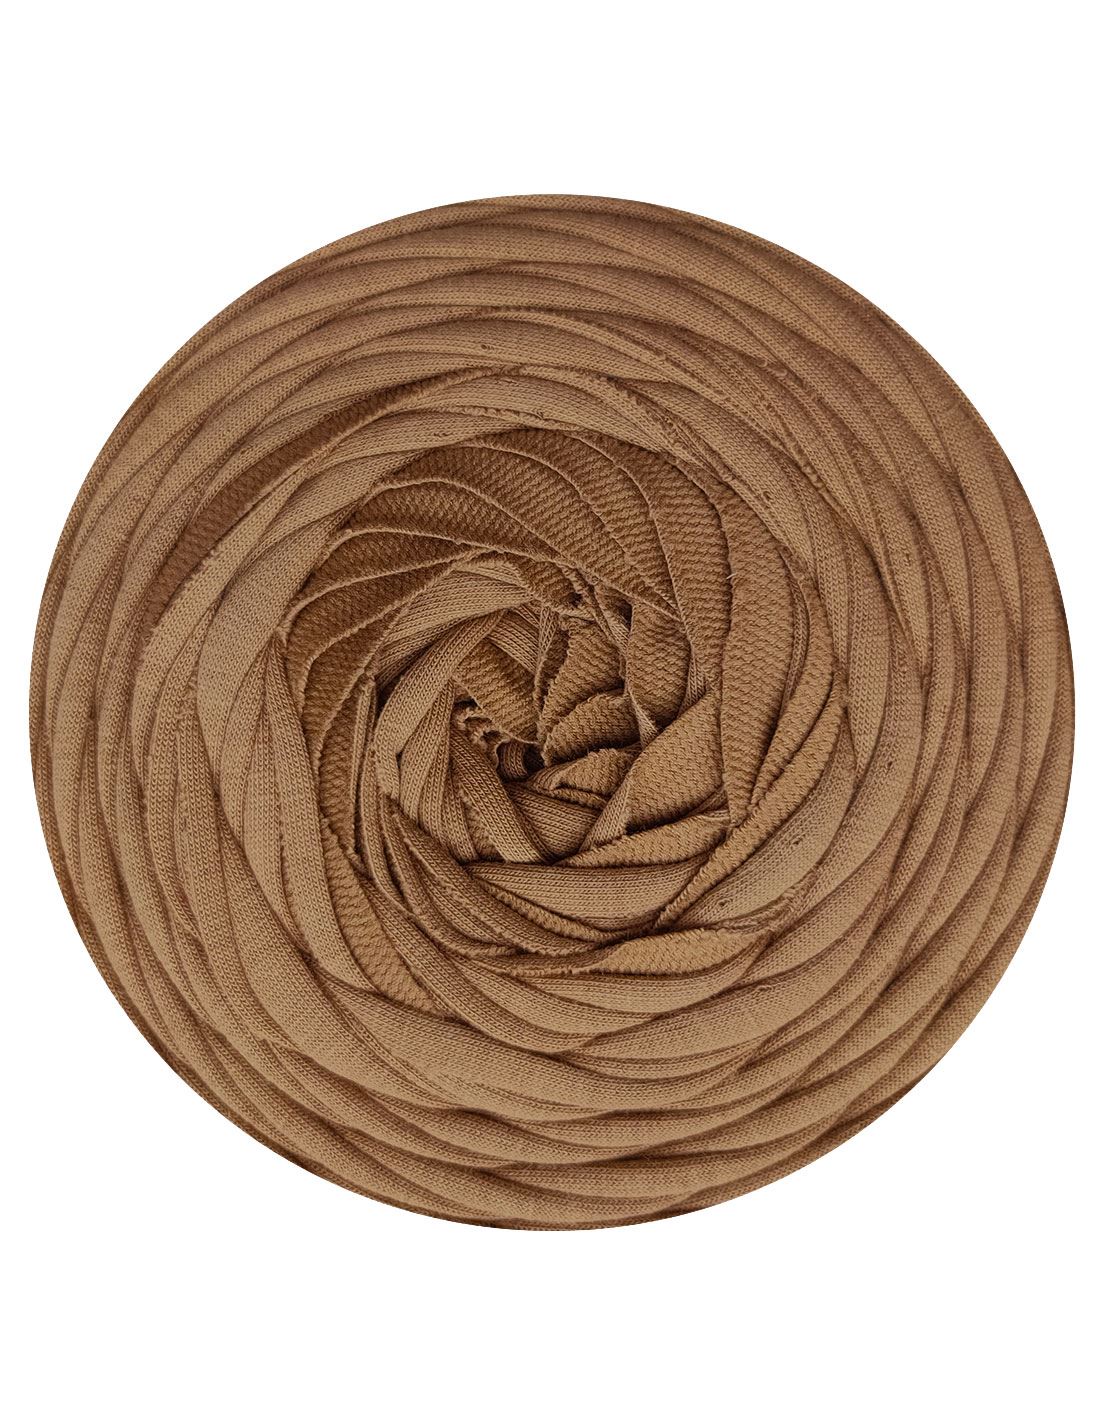 Fawn beige t-shirt yarn by Rescue Yarn (100-120m)